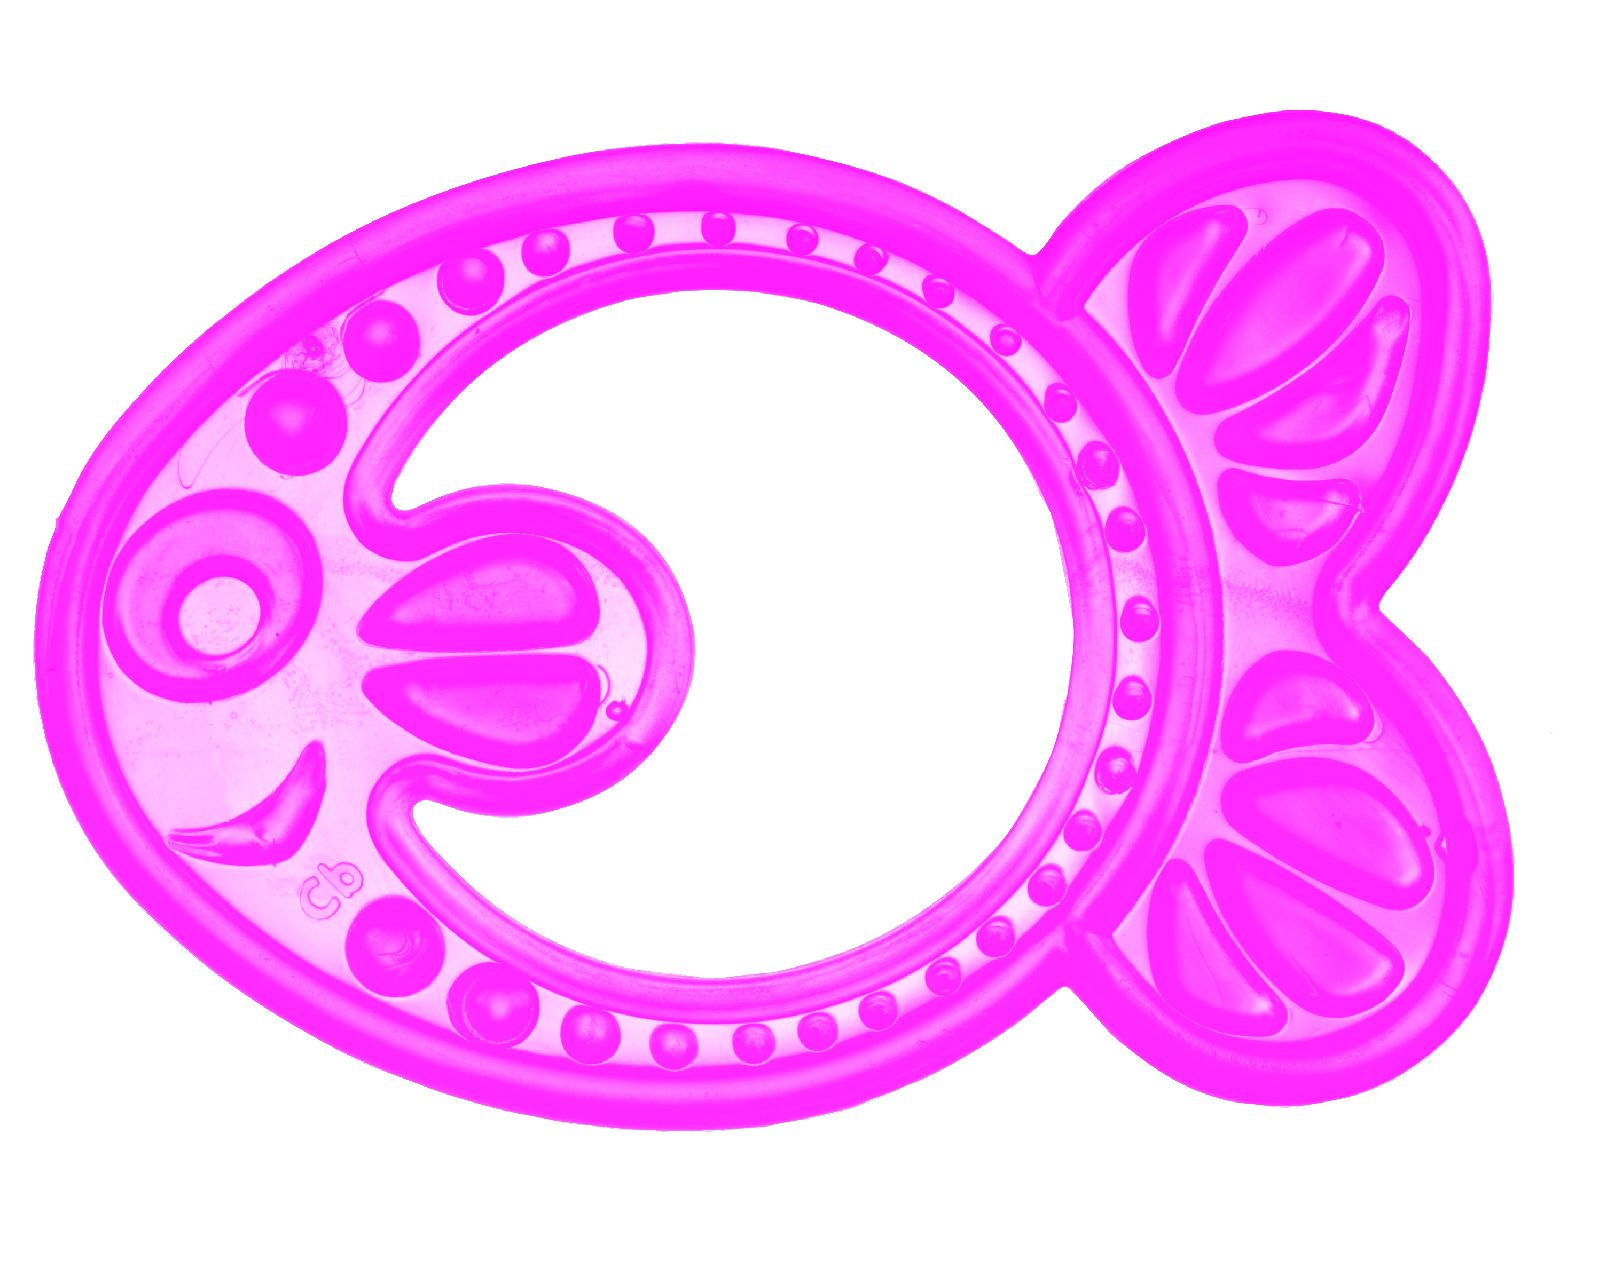 Прорезыватель мягкий Canpol арт. 13/109, 0+ мес., цвет розовый, форма рыбка